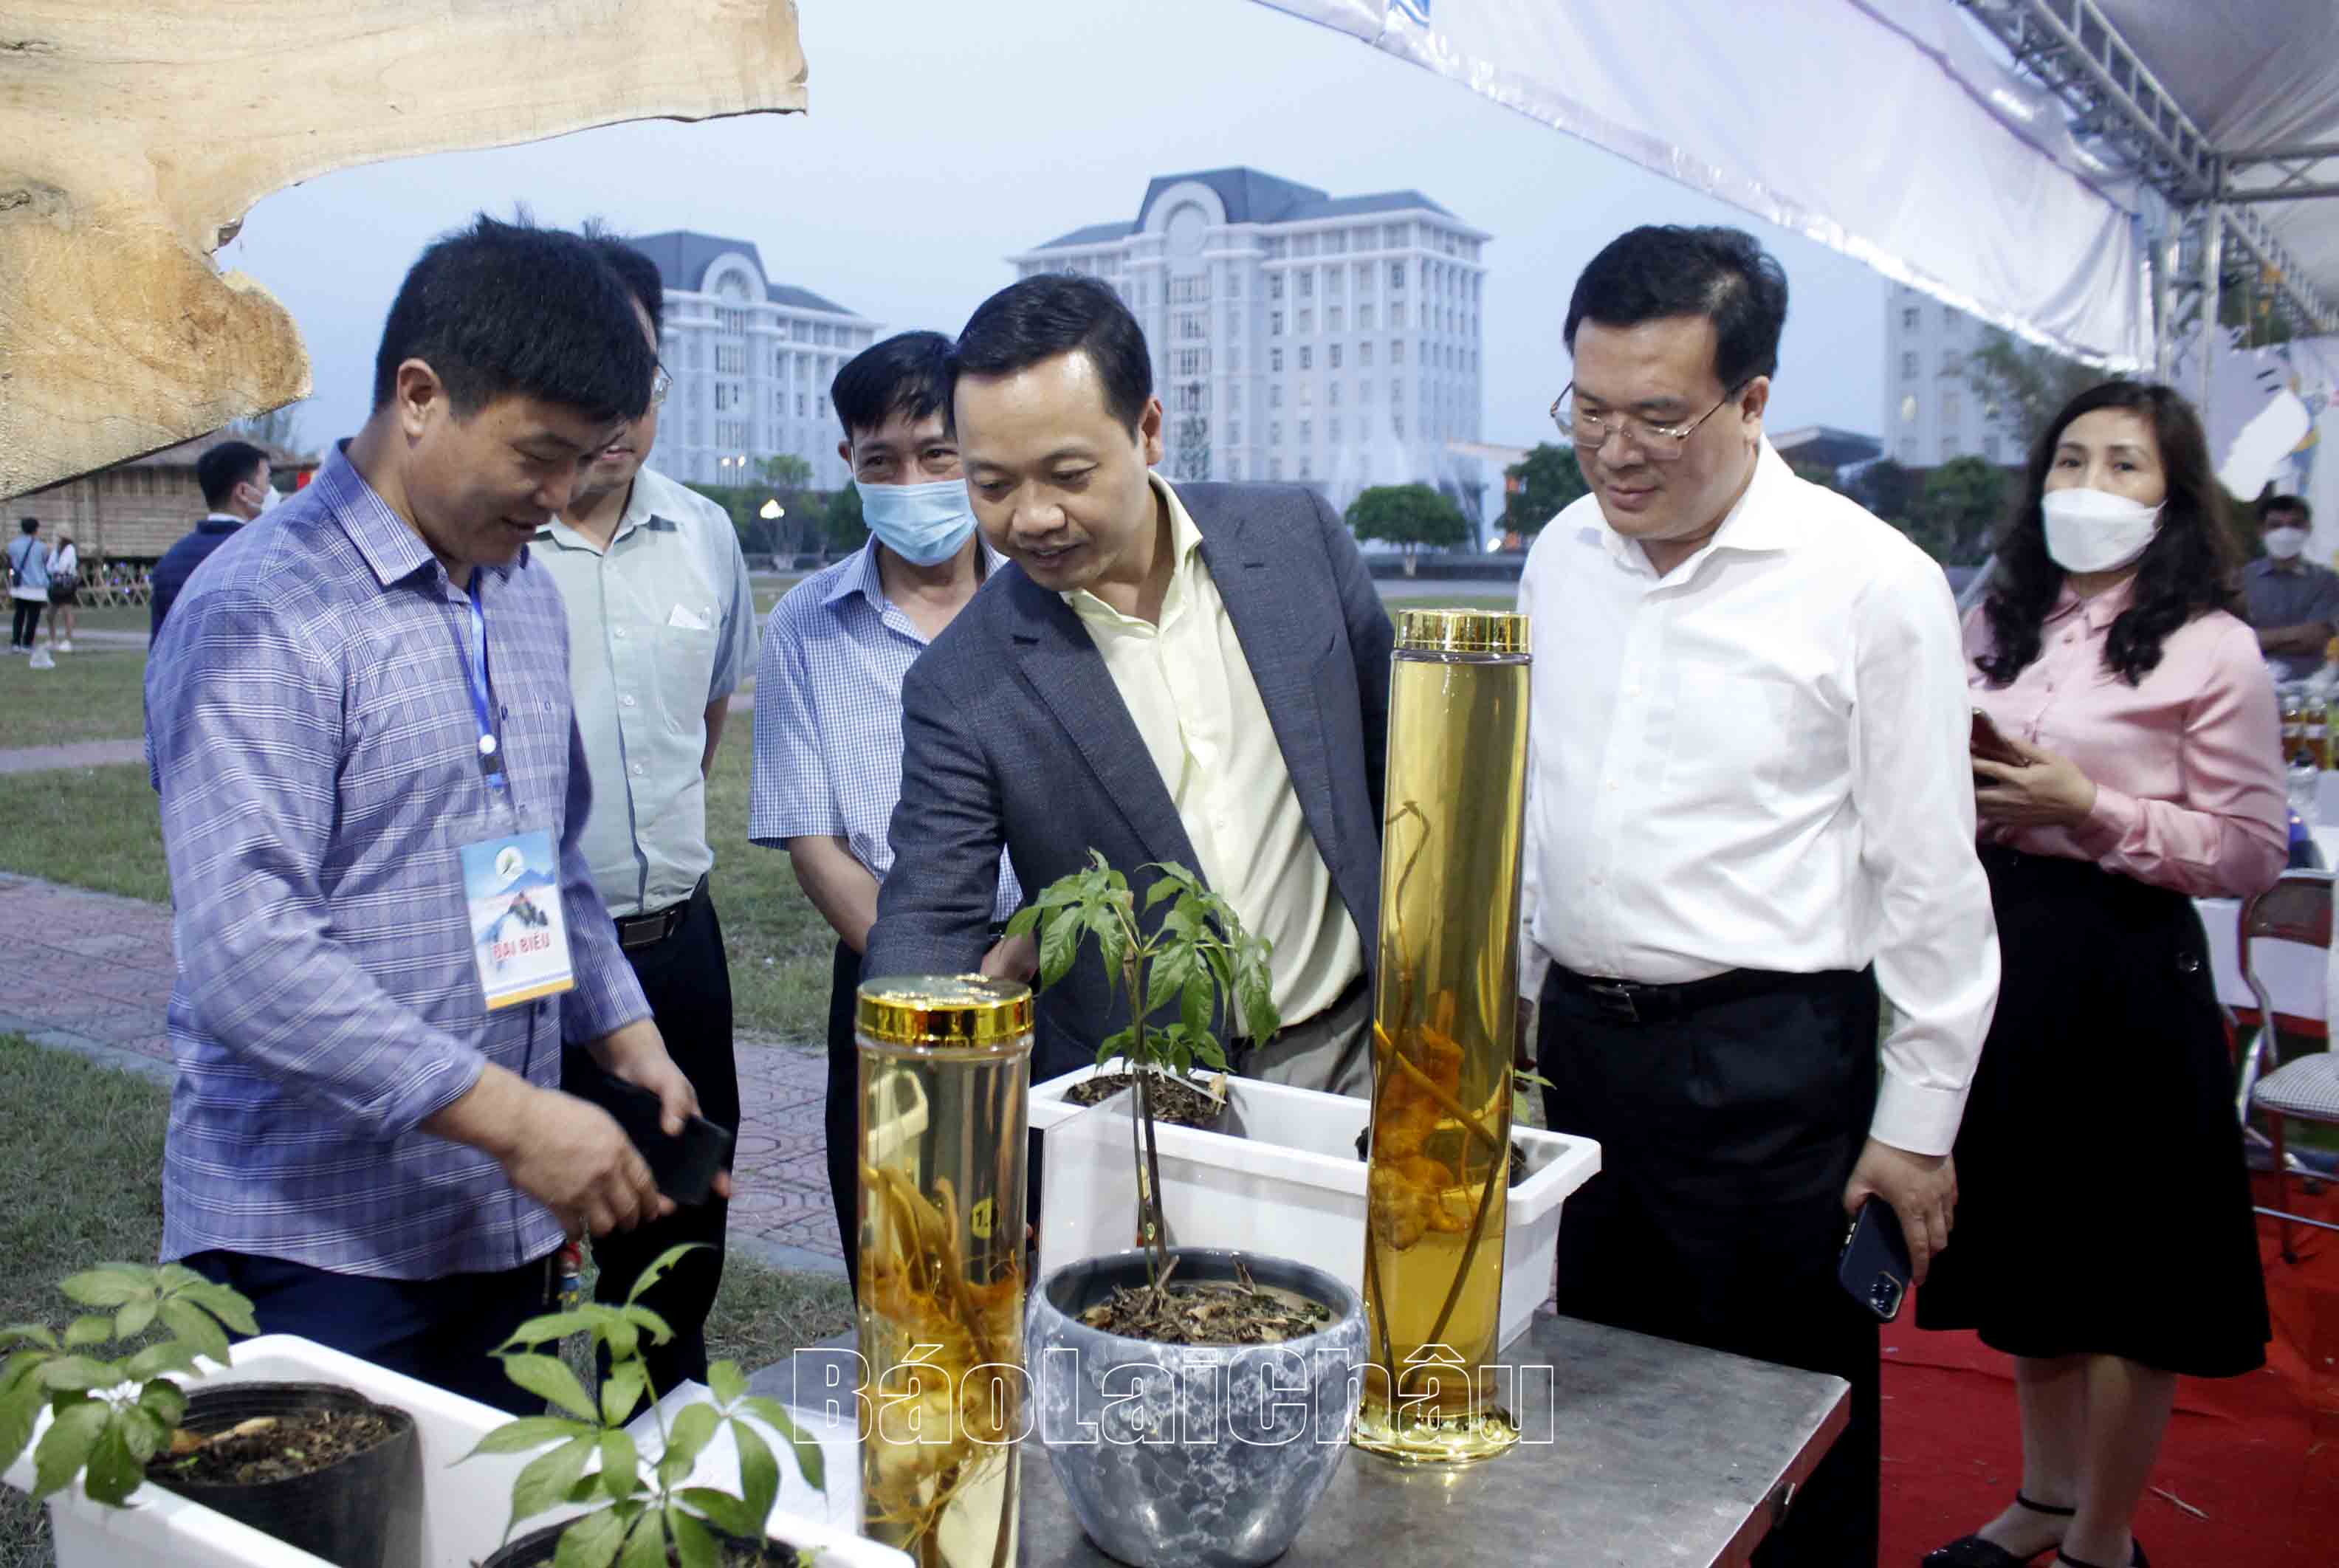 Đồng chí Chủ tịch UBND tỉnh, lãnh đạo các sở, ngành động viên hợp tác xã Sâm Lai Châu cố gắng đưa cây sâm phát triển và xây dựng thương hiệu. 